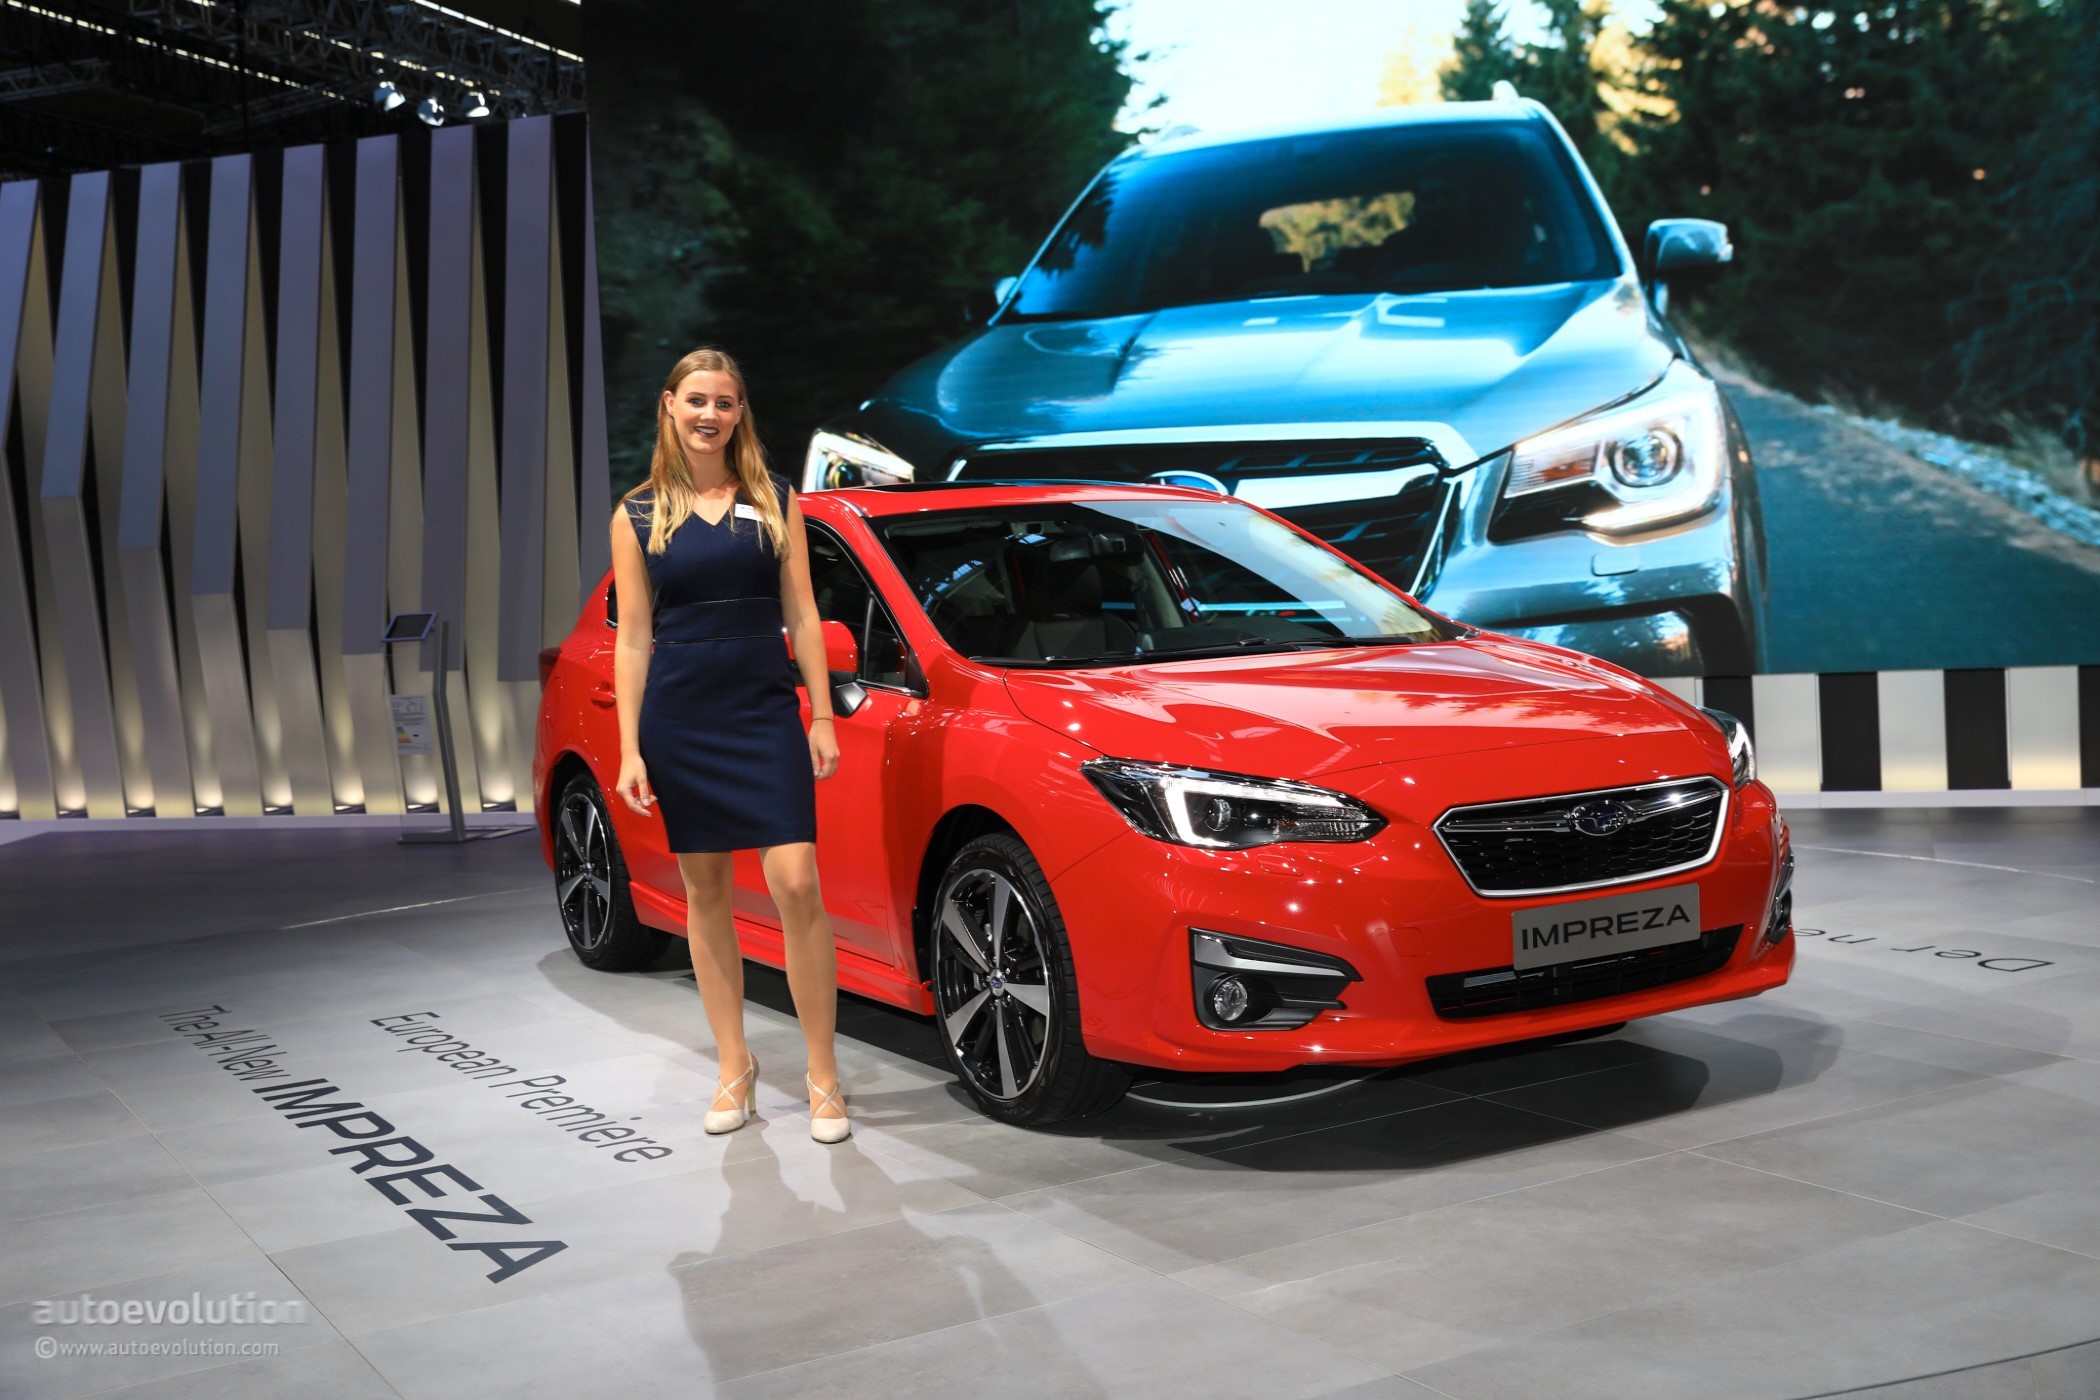 2018 Subaru Impreza Live At 2017 Frankfurt Motor Show European Model